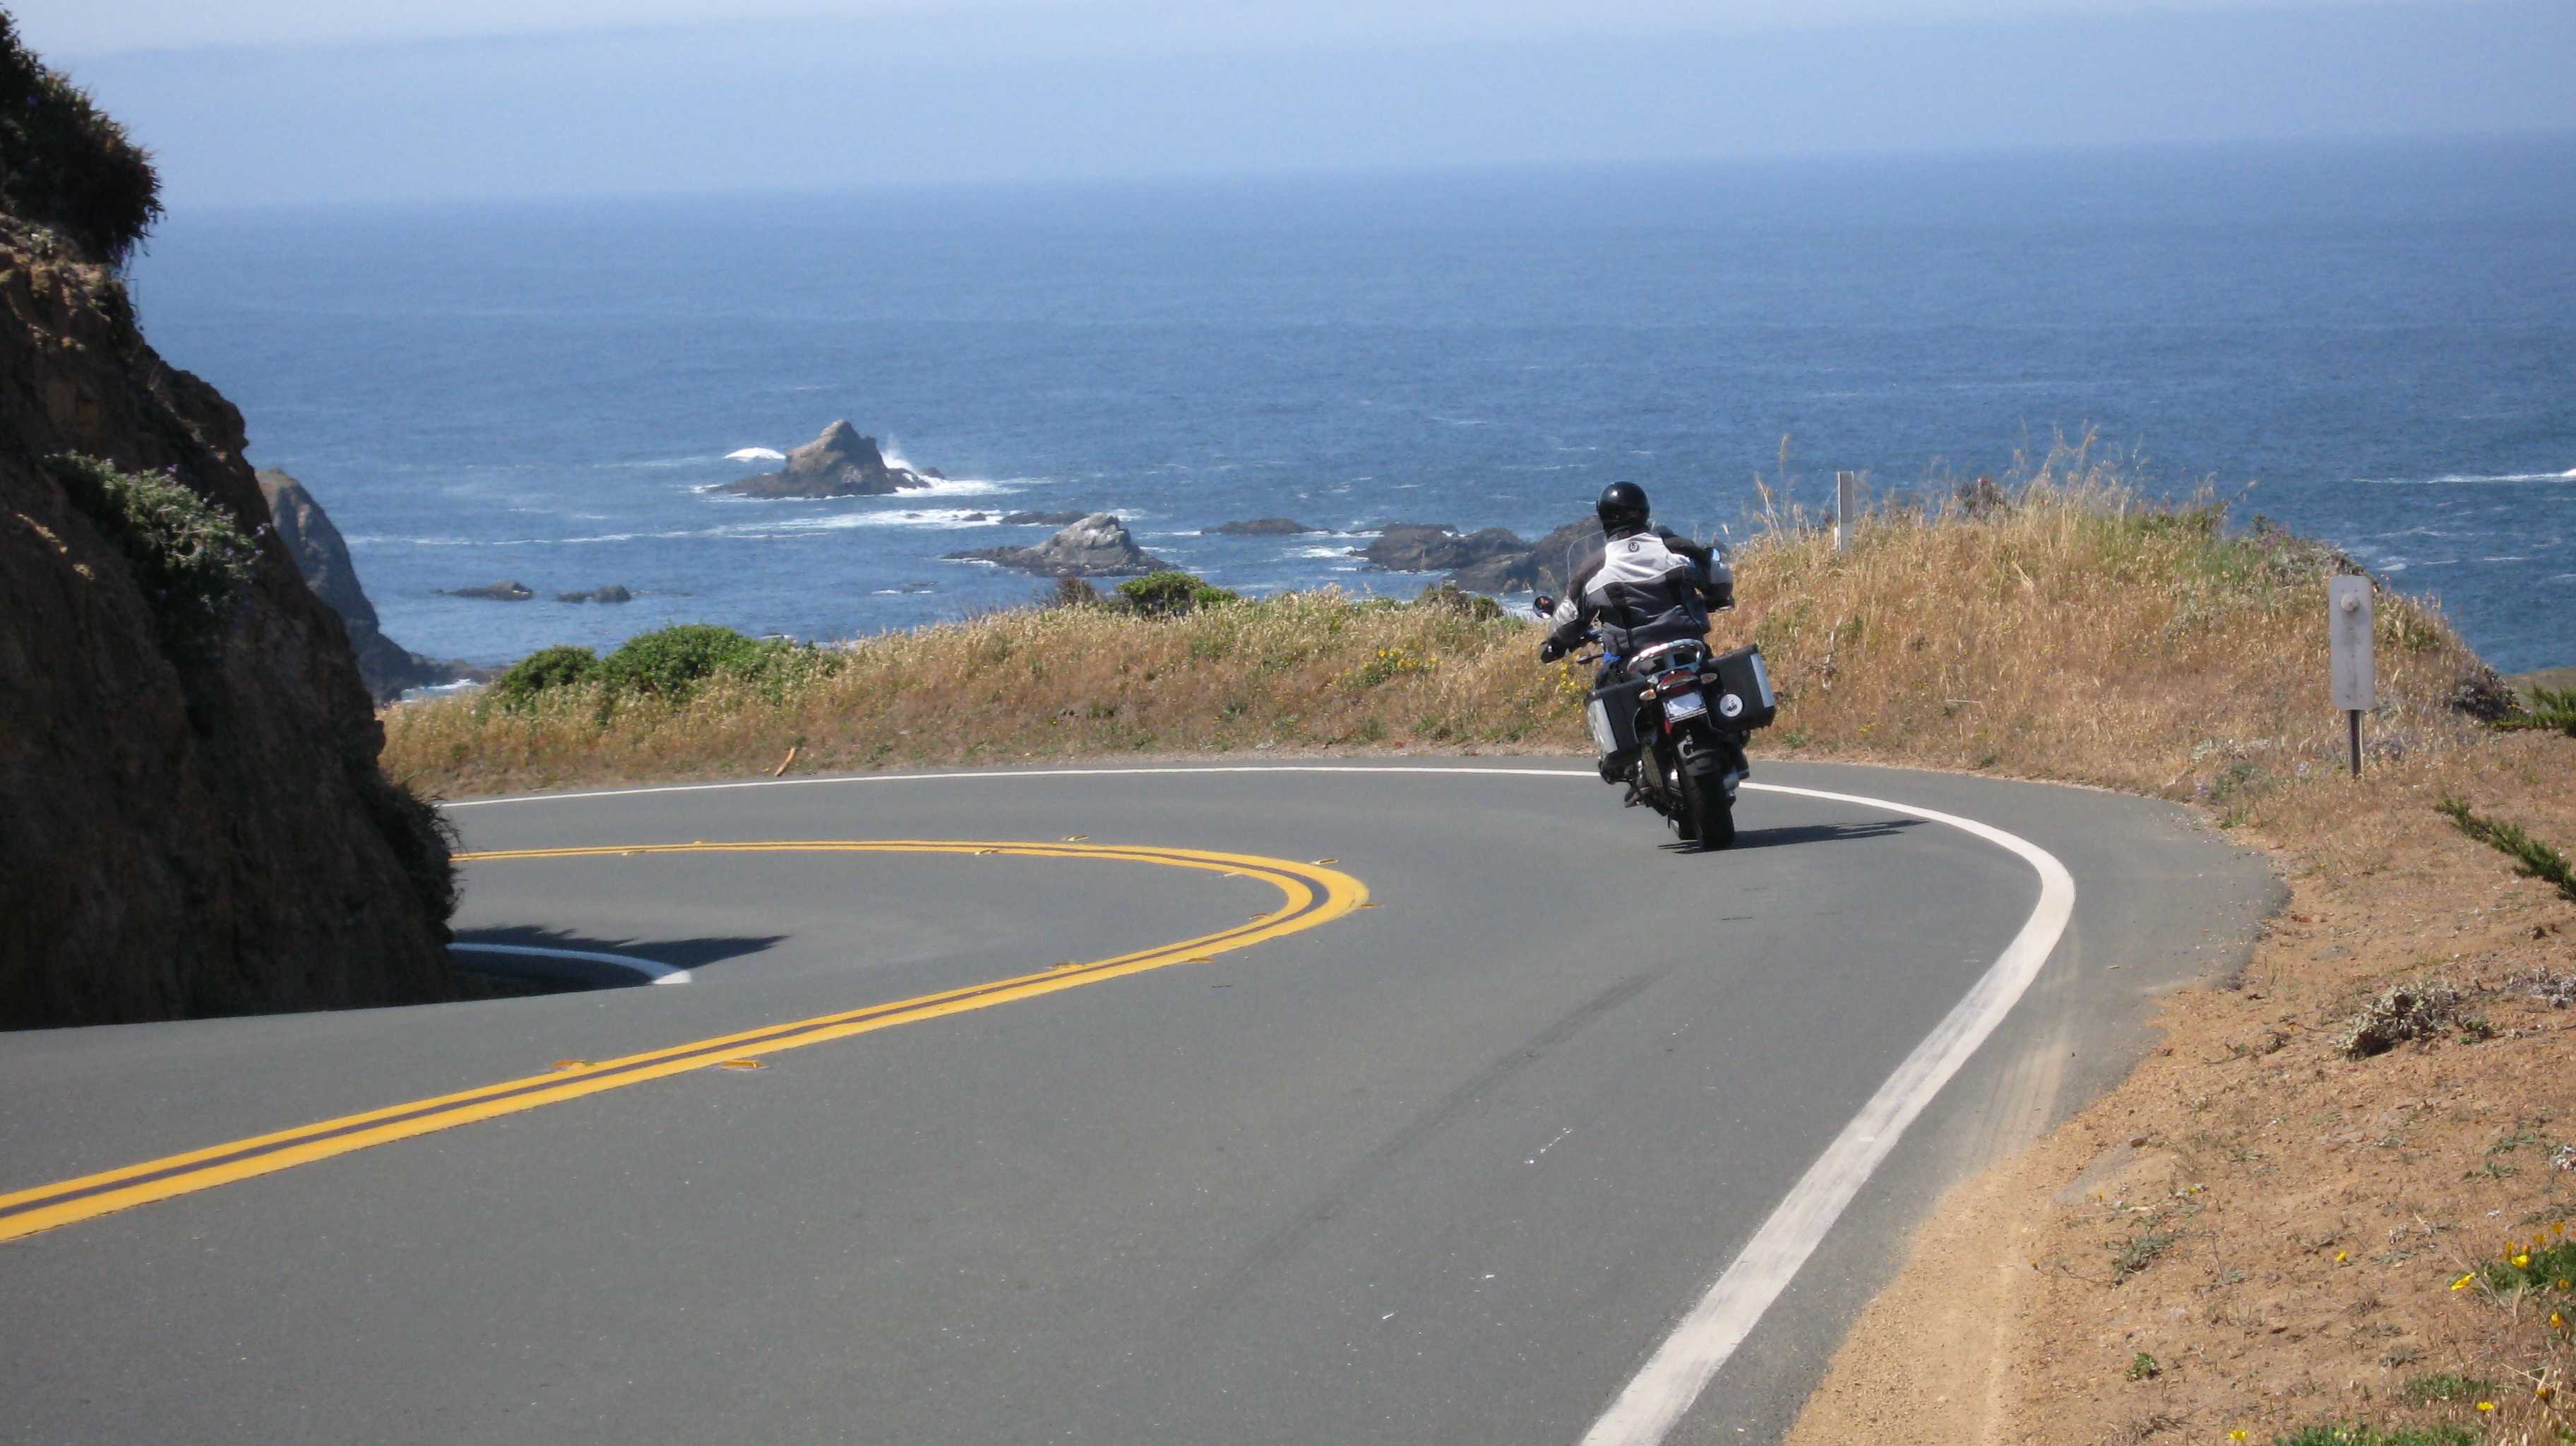 Мотоцикл едет по дороге. Мотоцикл на дороге. Мотоцикл едет. Мотоцикл для путешествий. Мото и море.